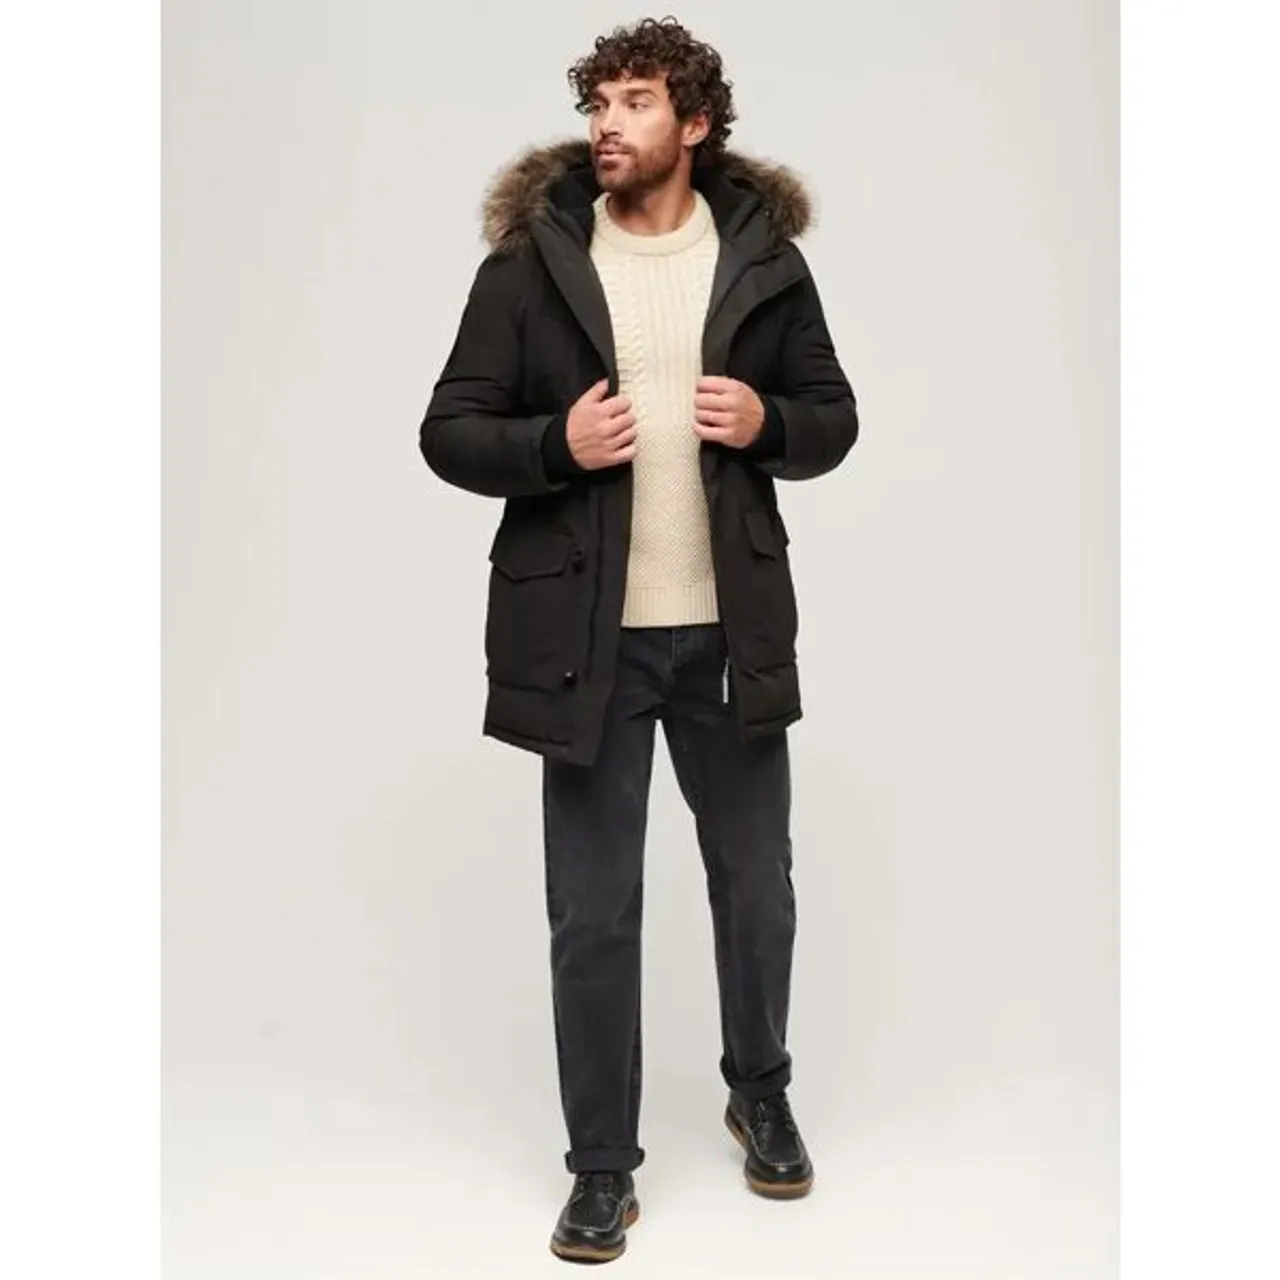 Superdry Everest Faux Fur Hooded Parka Coat, Black - Black - Male